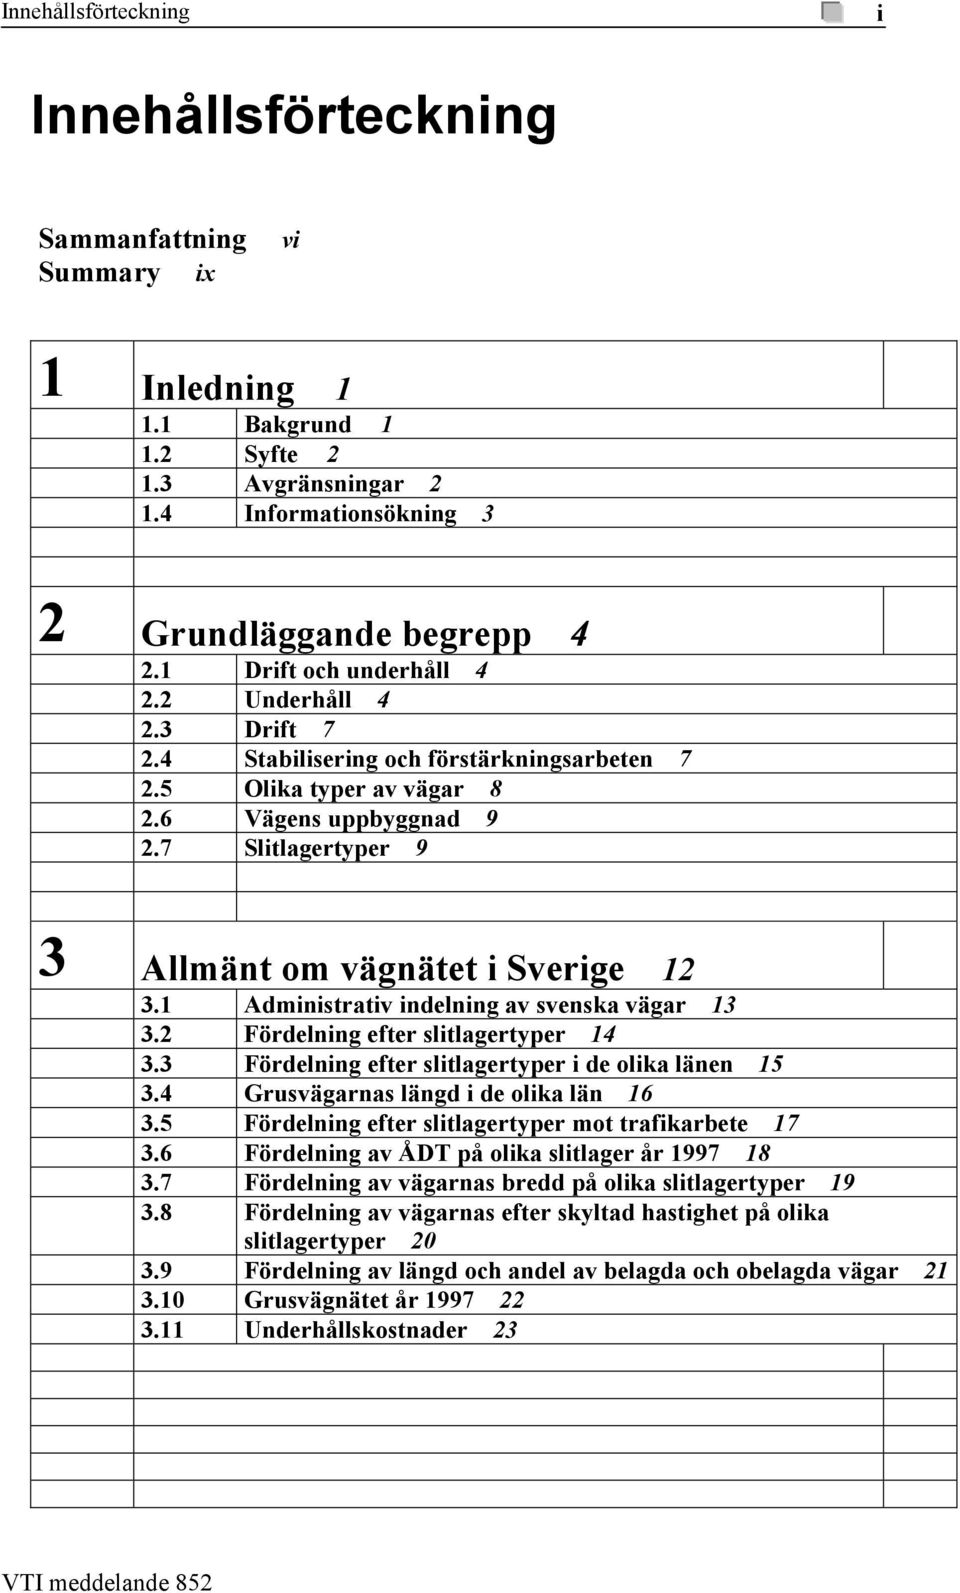 7 Slitlagertyper 9 3 Allmänt om vägnätet i Sverige 12 3.1 Administrativ indelning av svenska vägar 13 3.2 Fördelning efter slitlagertyper 14 3.3 Fördelning efter slitlagertyper i de olika länen 15 3.